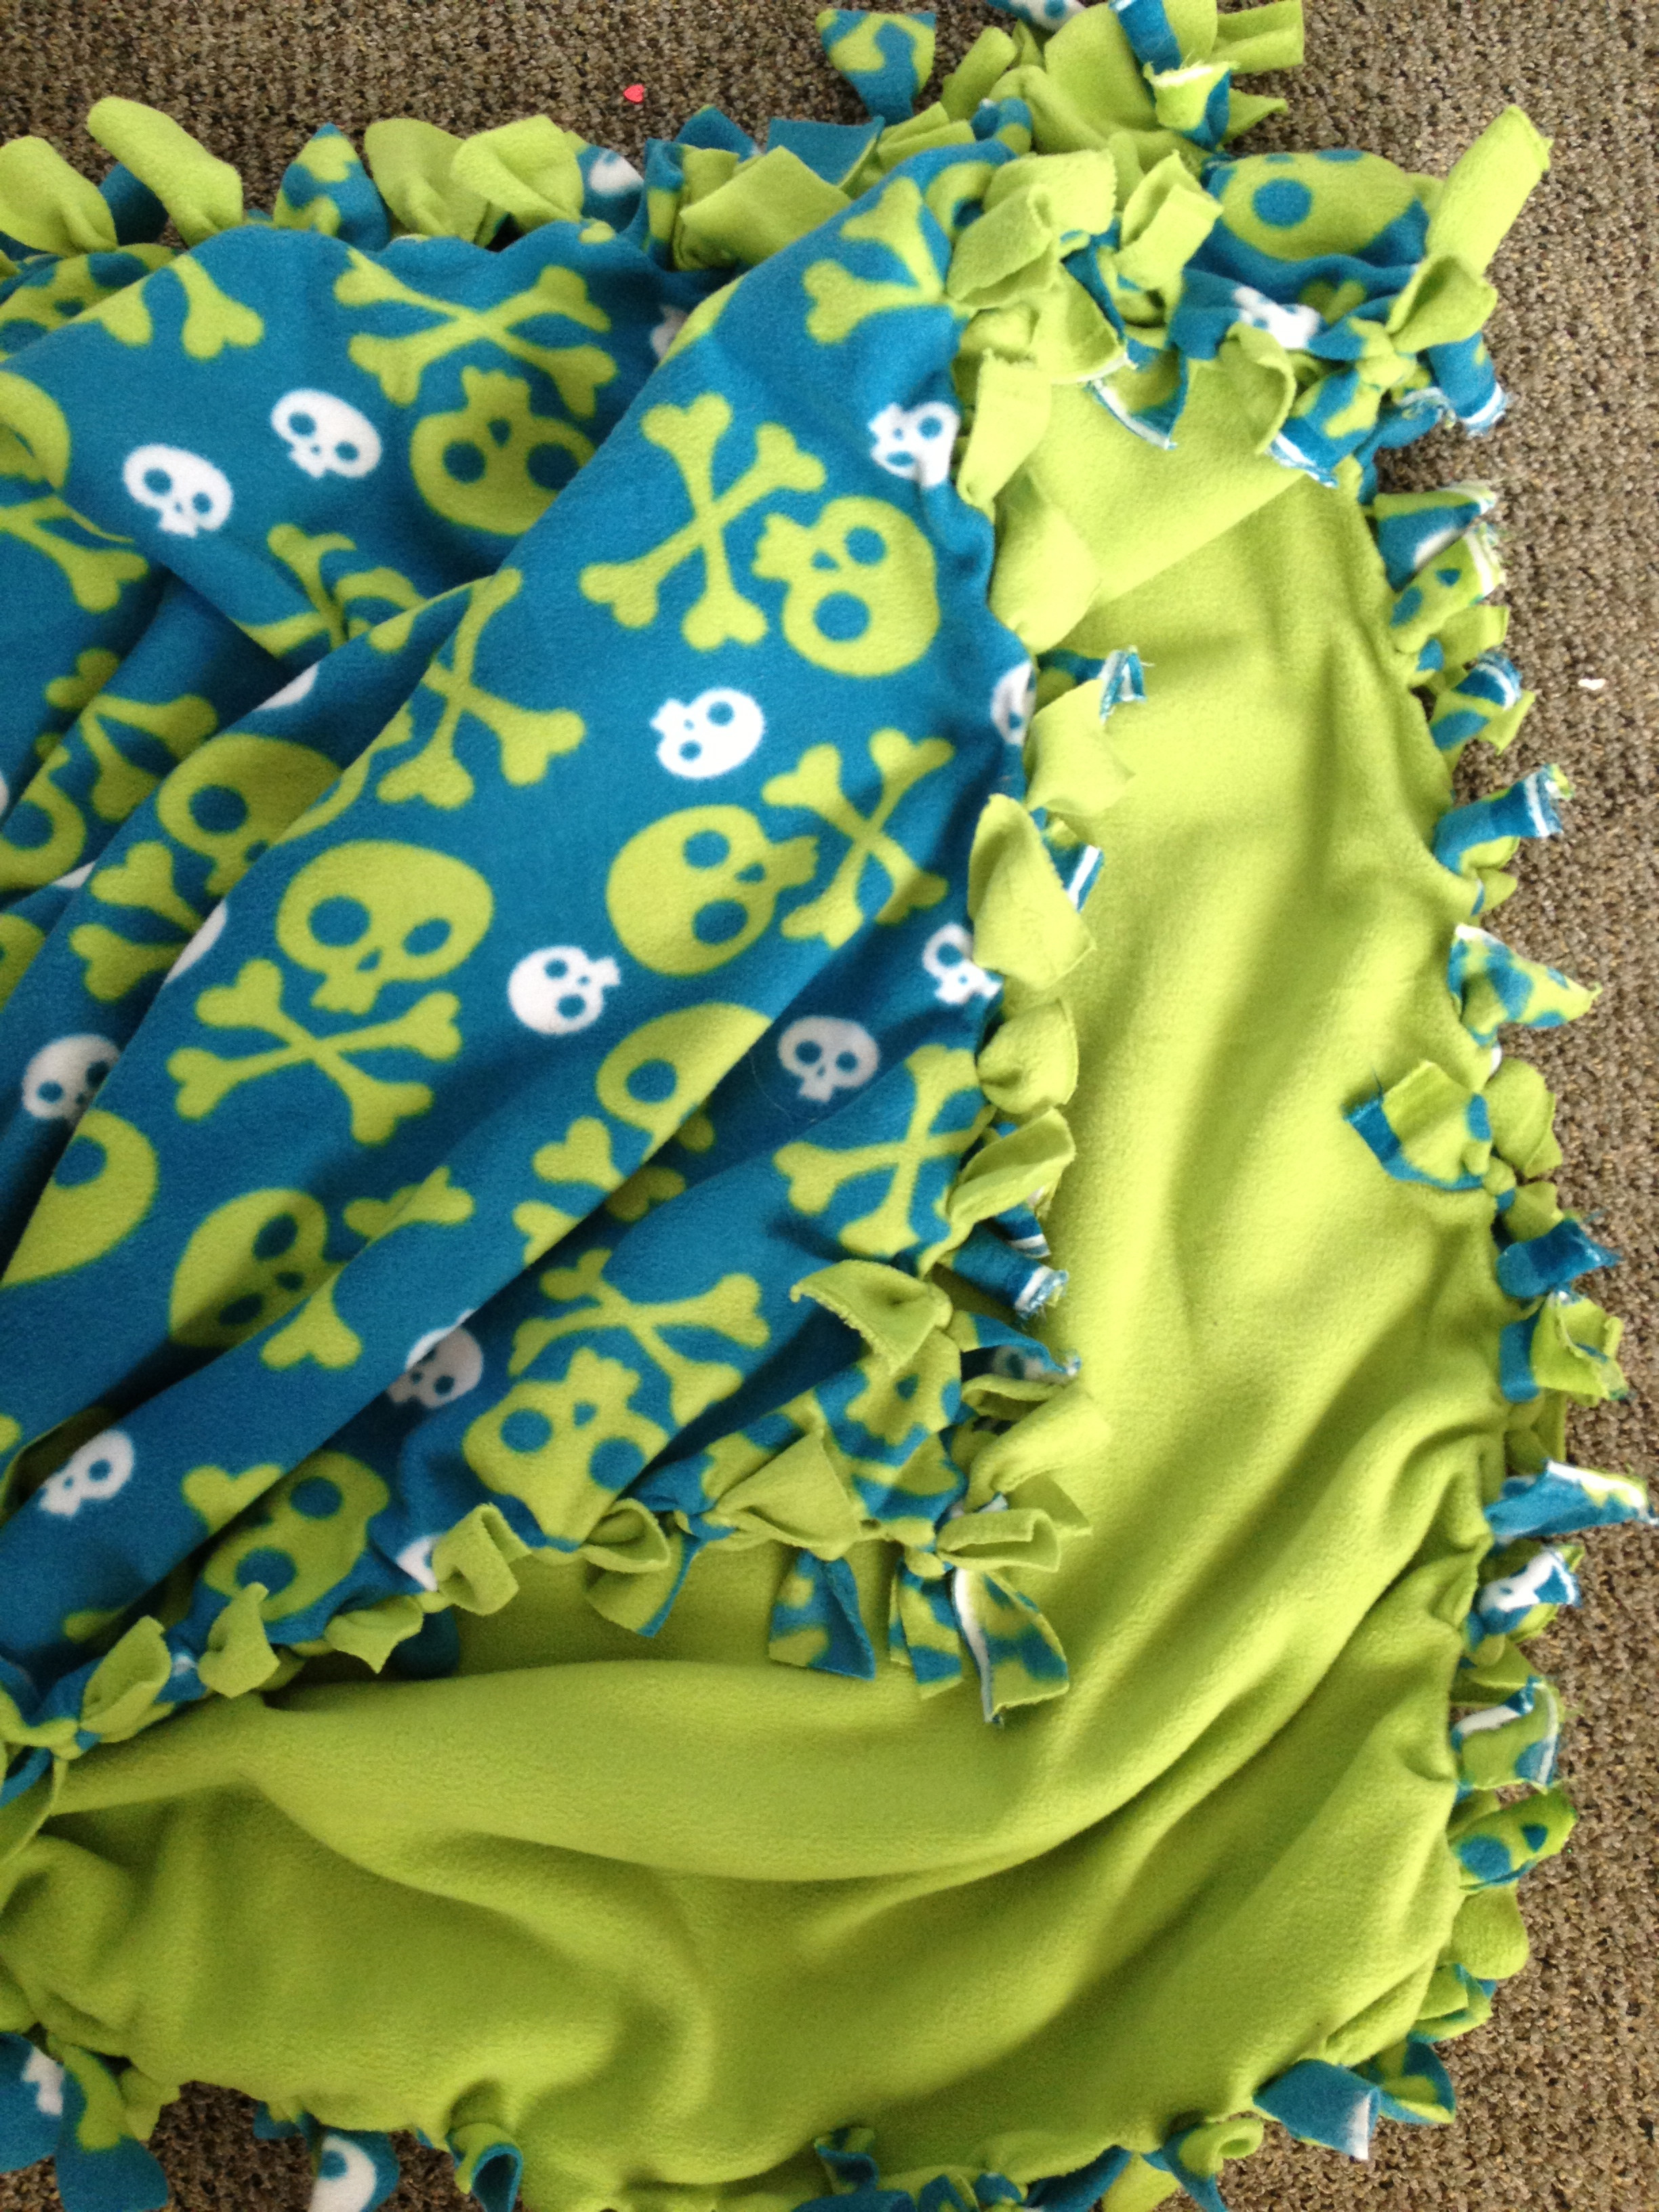 Best ideas about DIY Fleece Blanket
. Save or Pin DIY Fleece Tie Blanket Now.